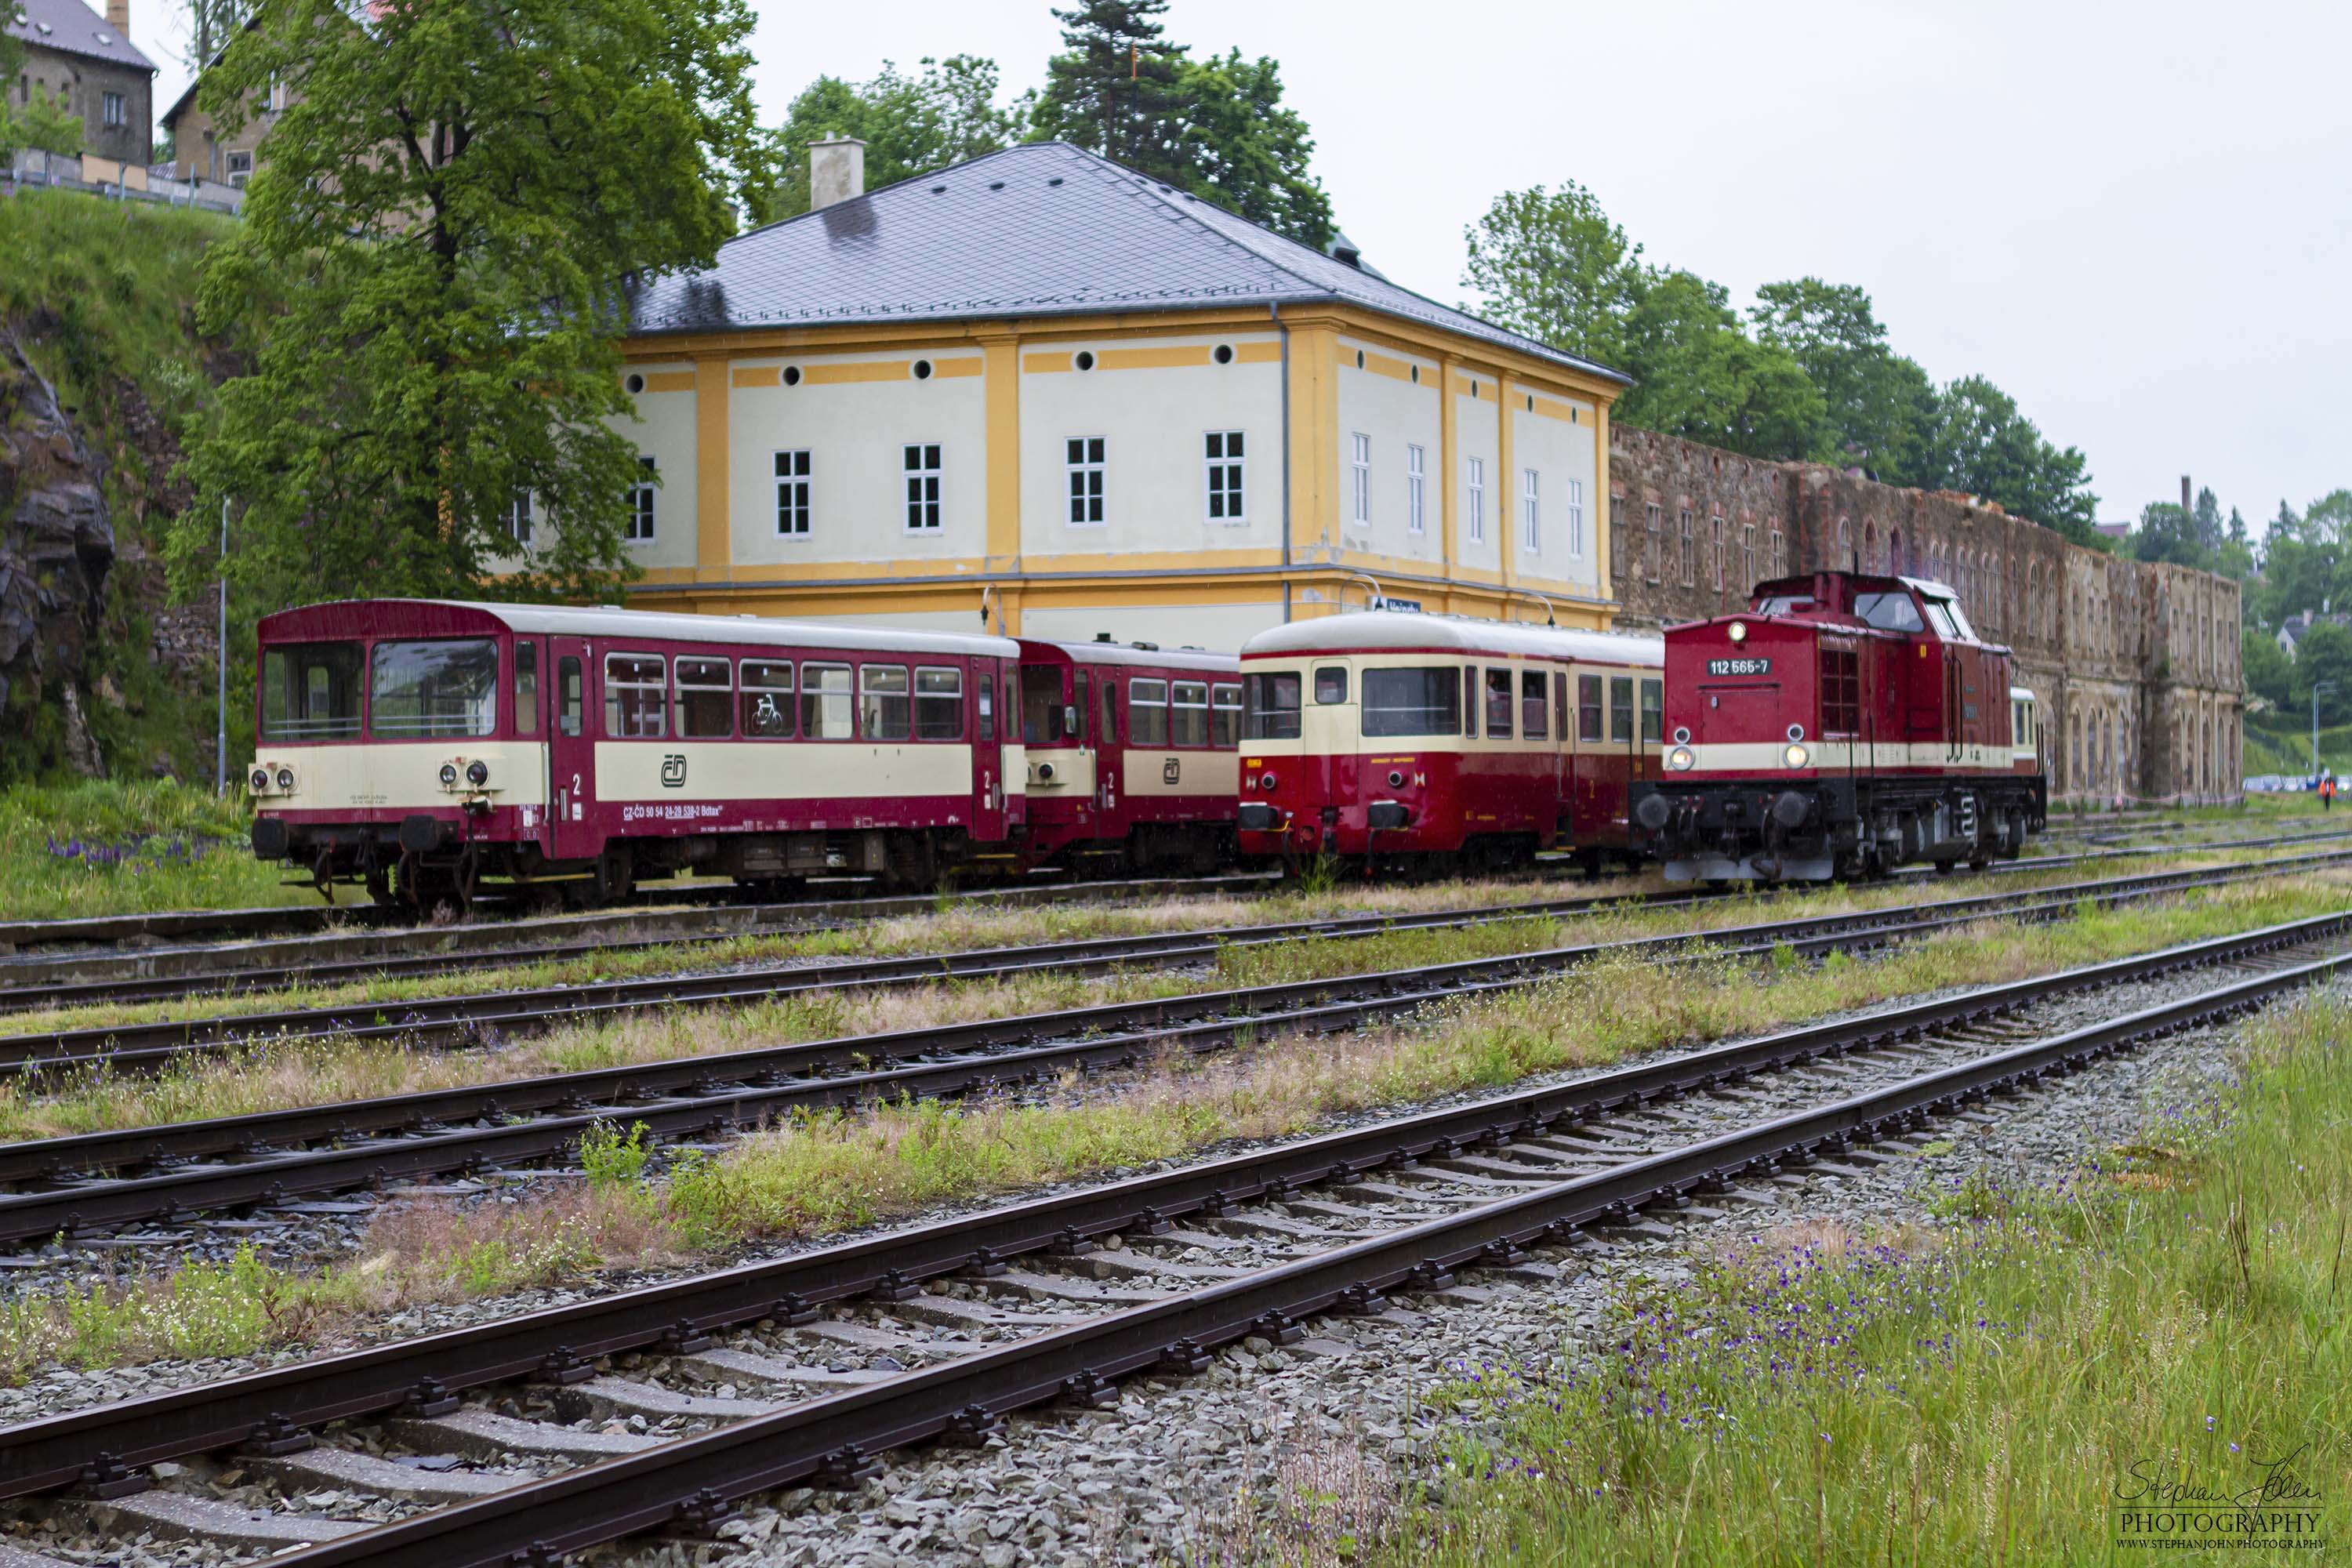 Da der tschechiche VT M 262 056 keine Zulassung für Deutschland hat, schleppte die Lok 112 565-7 den VT nach Vejprty. Die Schlepplok hat abgekuppelt und steht nun im strömenden Regen auf dem Nachbargleis für die Rückfahrt.